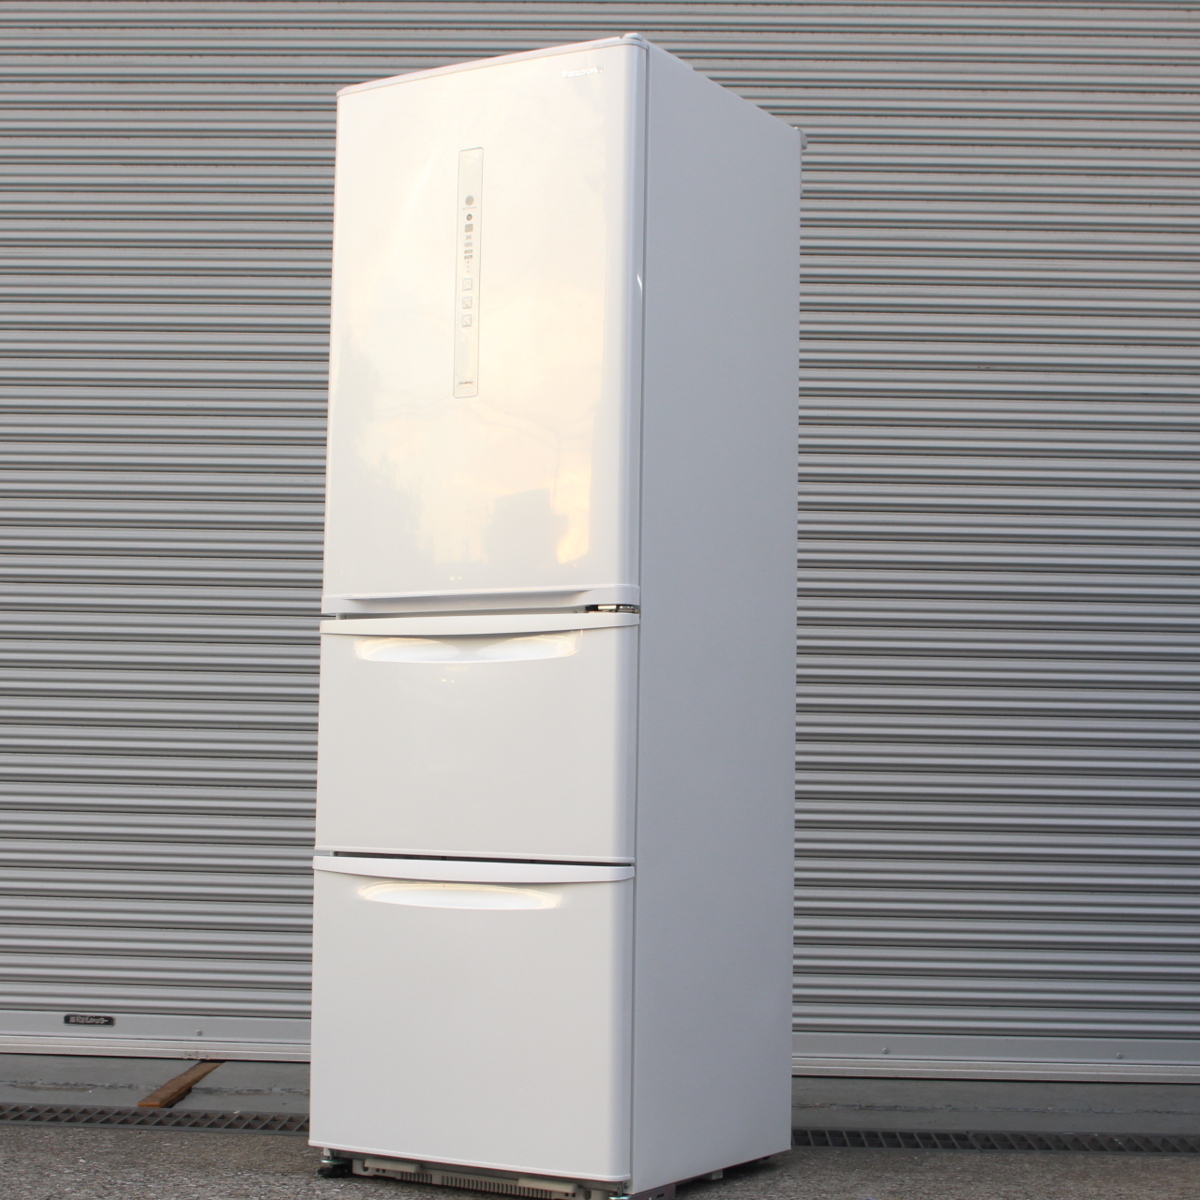 パナソニック ノンフロン冷凍冷蔵庫 NR-C37HC-W 3ドア 右開き 365L 2018年製